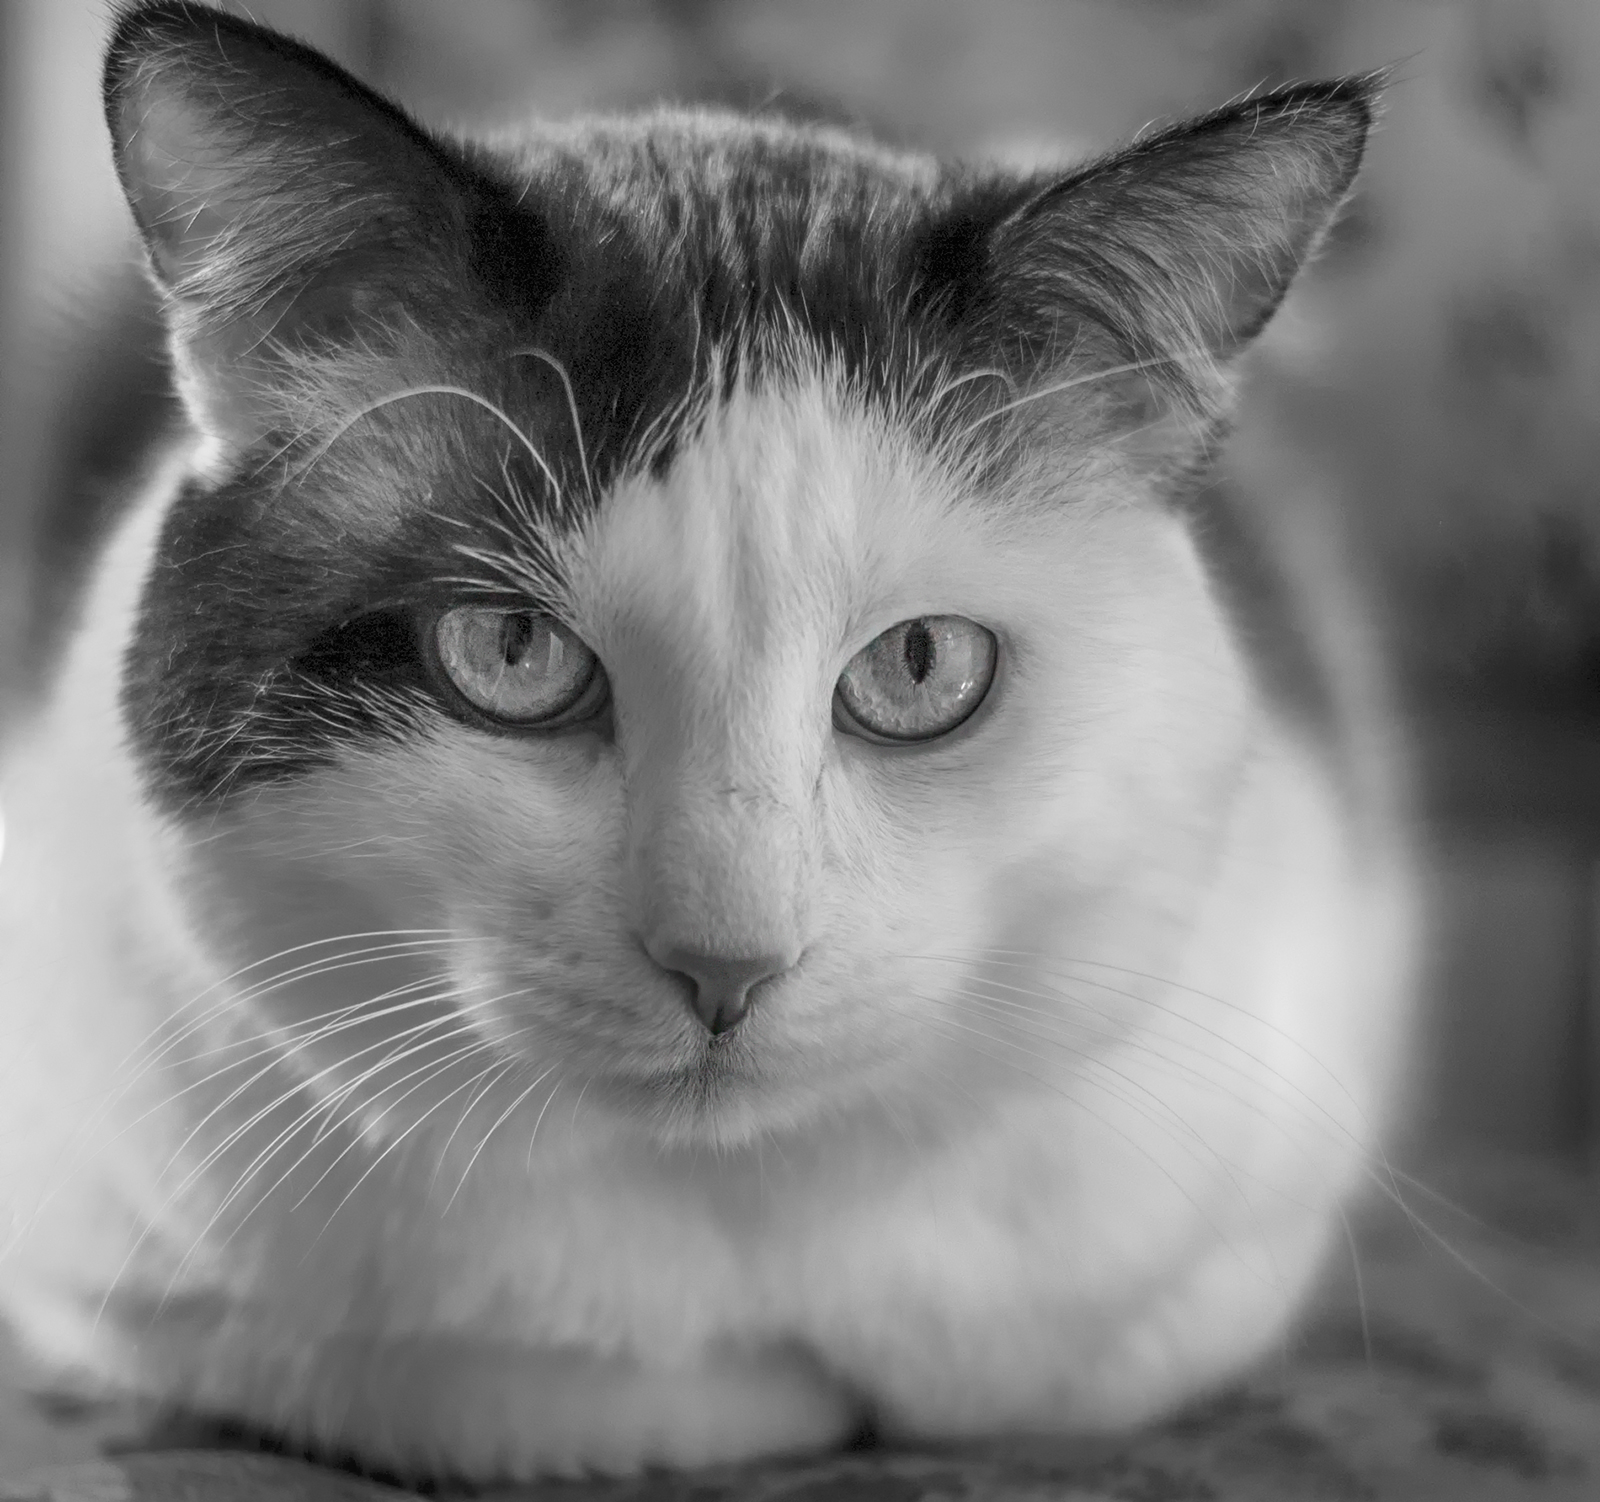 Фотографии конкурса котов. Фотоконкурс про котов. Бебебеб кот. Бкота. Кот б ответы